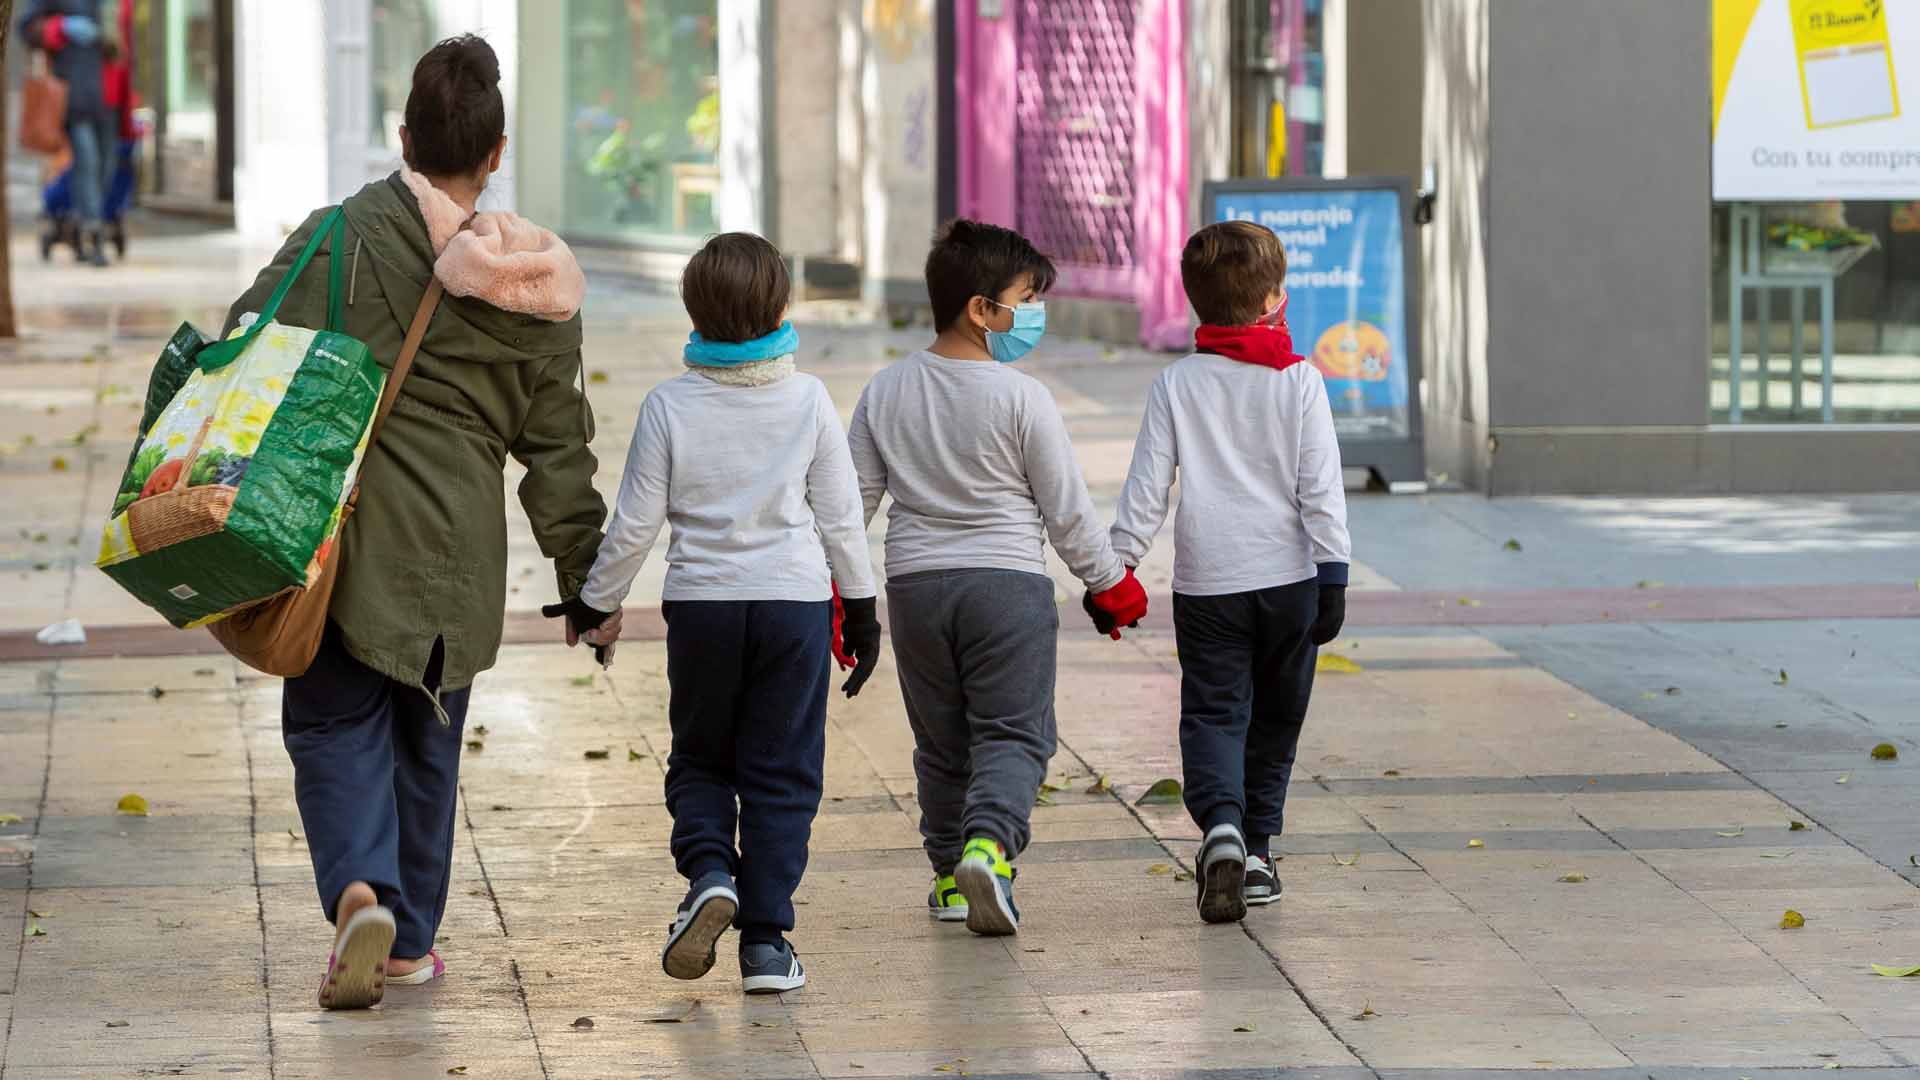 Directo | El Gobierno rectifica y permite salir a pasear a los menores de 14 años a partir del domingo